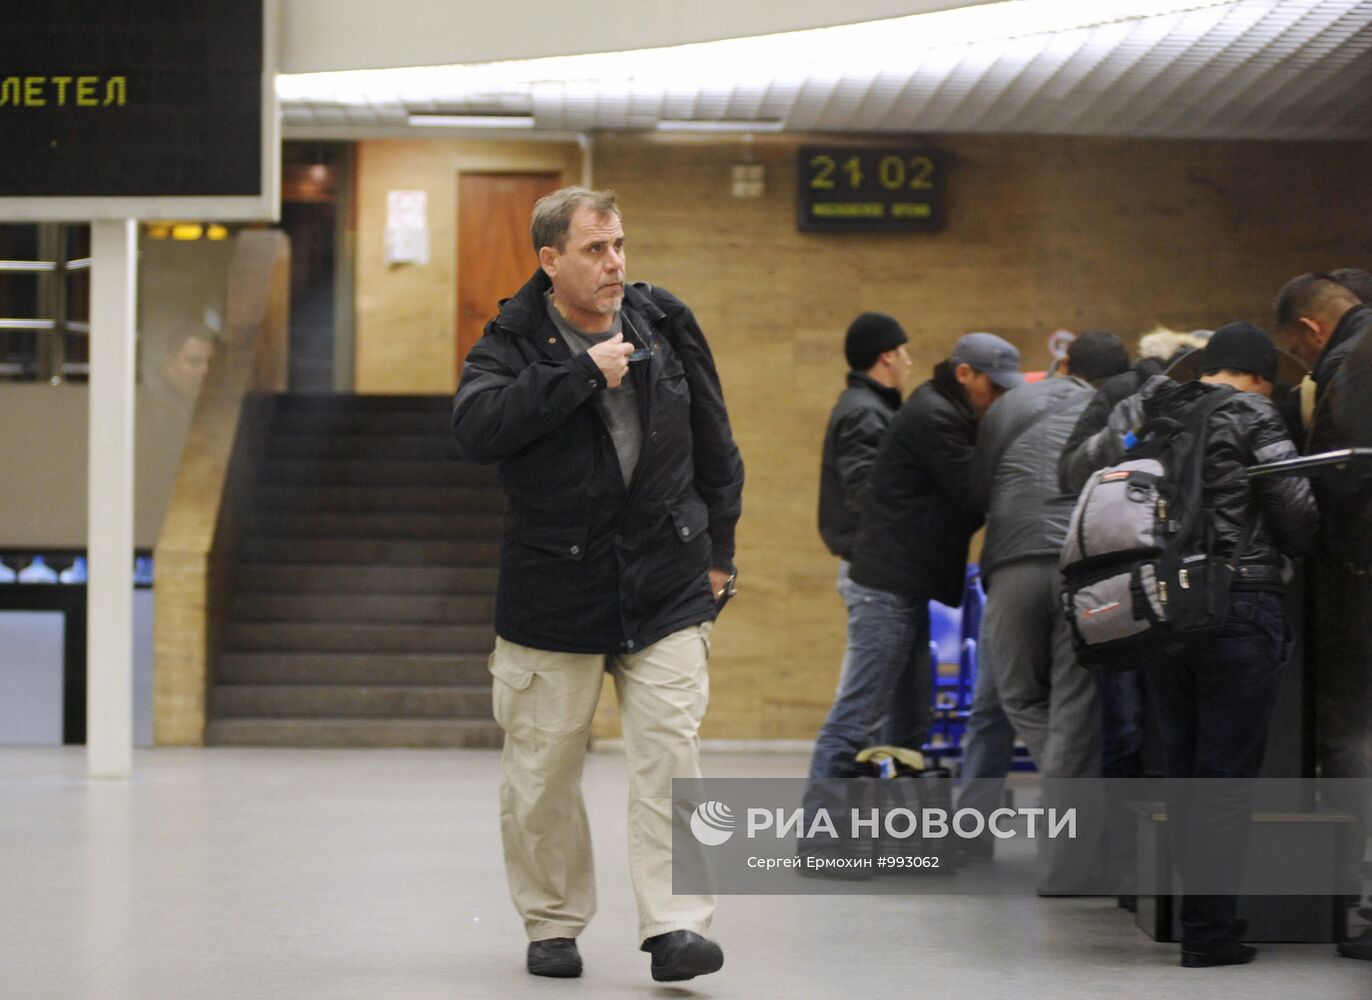 Пилот авиакомпании "Ролкан" А.Руденко прилетел в Санкт-Петербург